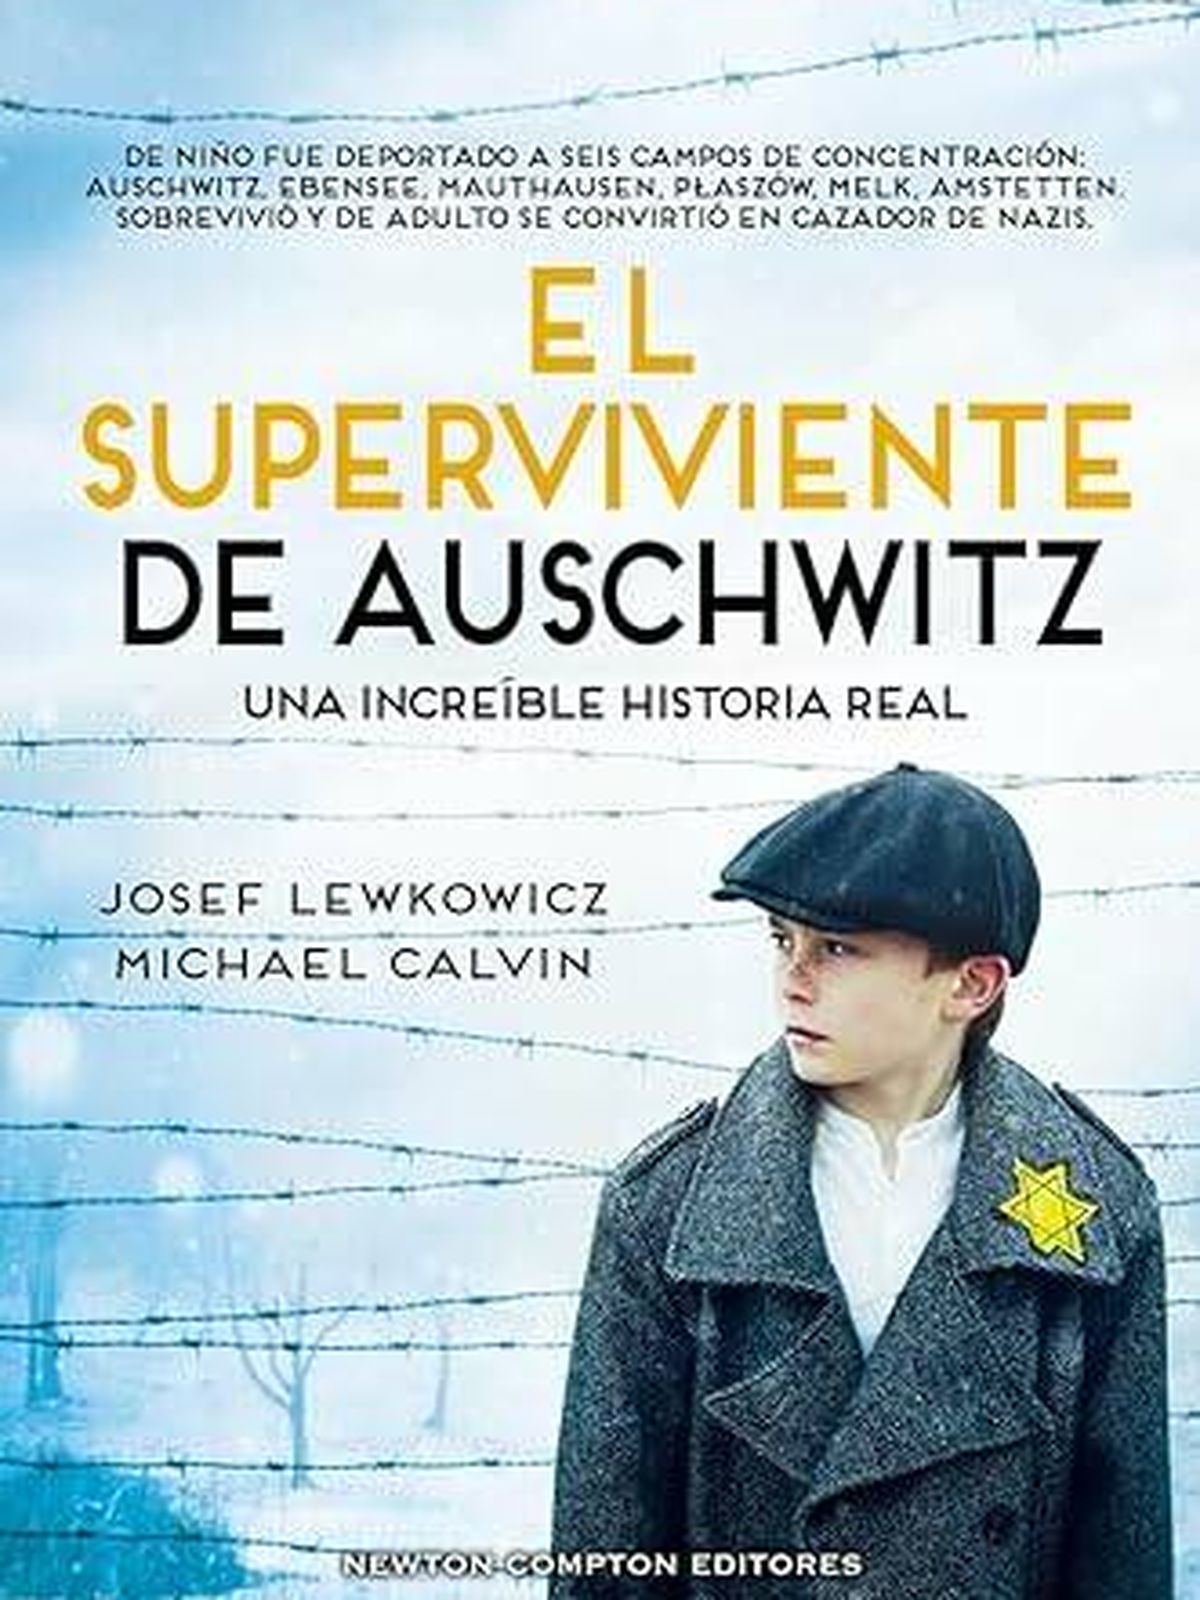 Portada de 'El superviviente de Auschwitz', la autobiografía de Josef Lewkowicz. 